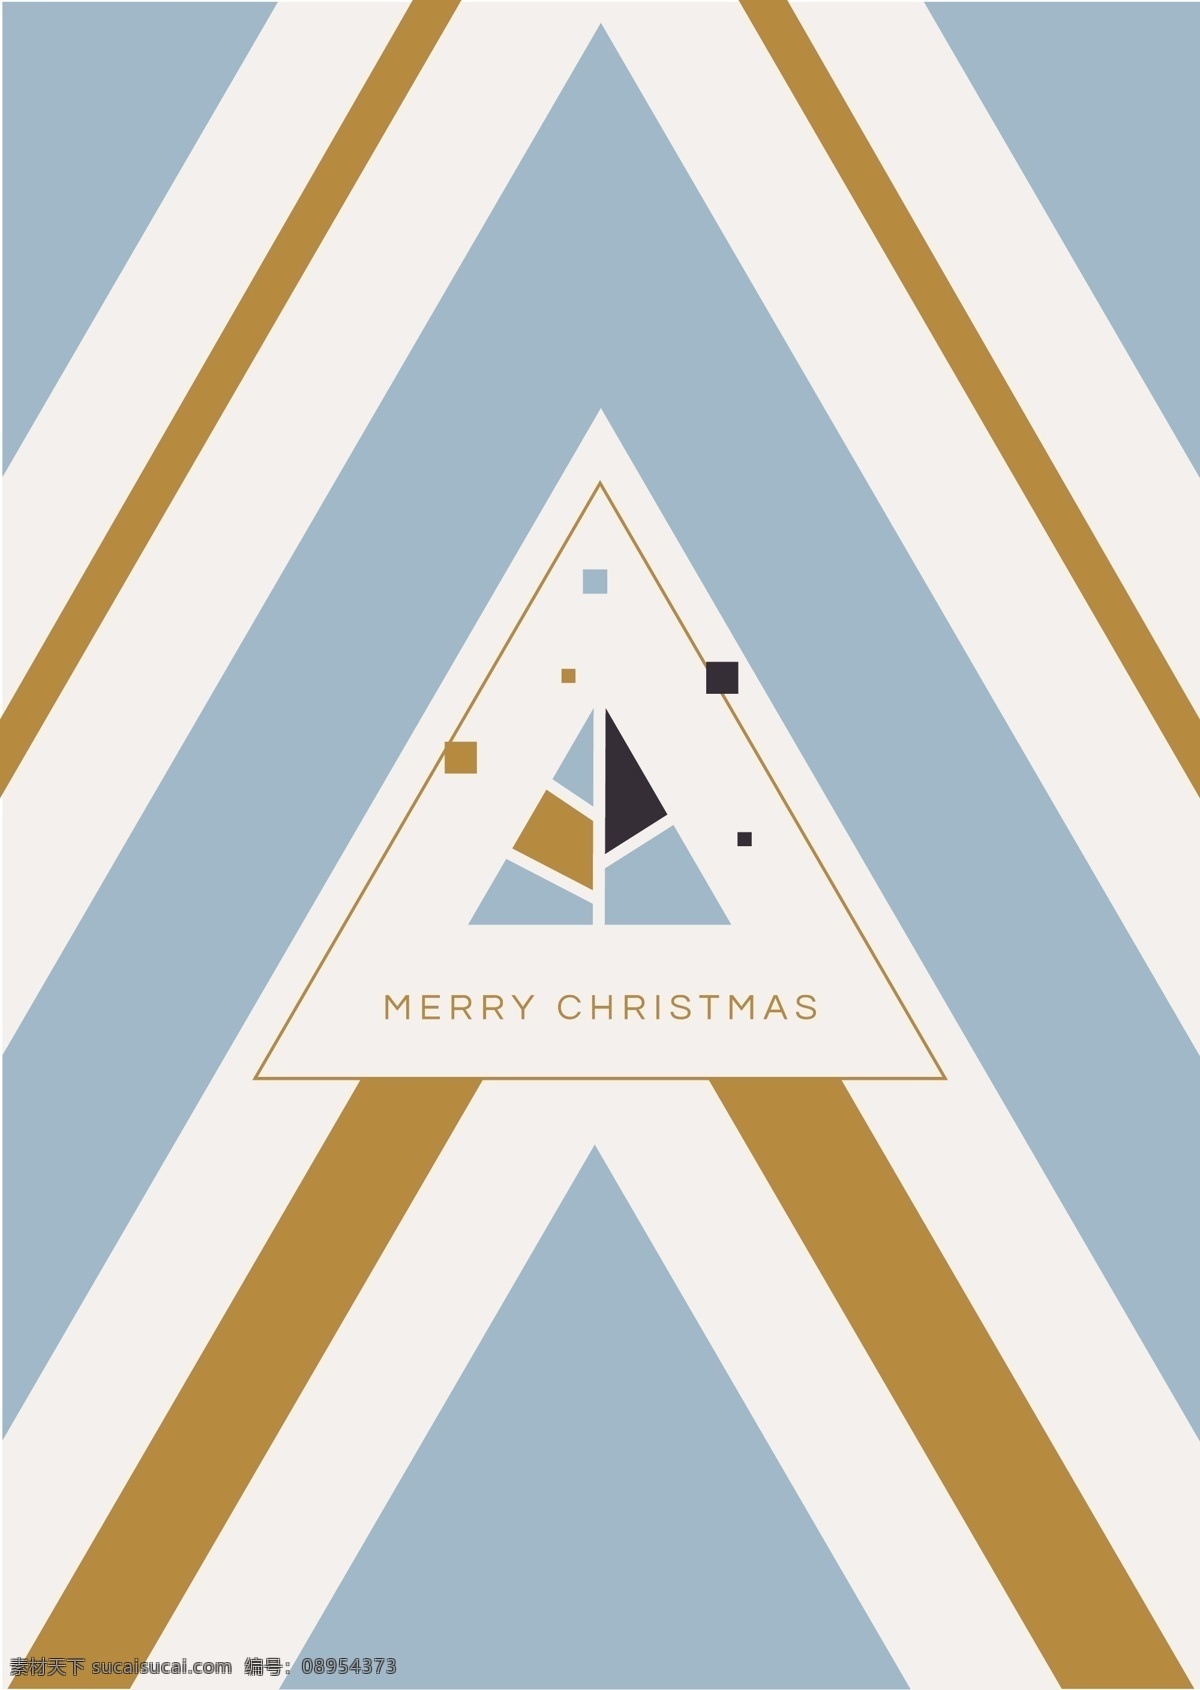 清新 风格 三 色 圣诞节 背景 矢量 不规则 格仔 几何 平面素材 三角形 设计素材 矢量素材